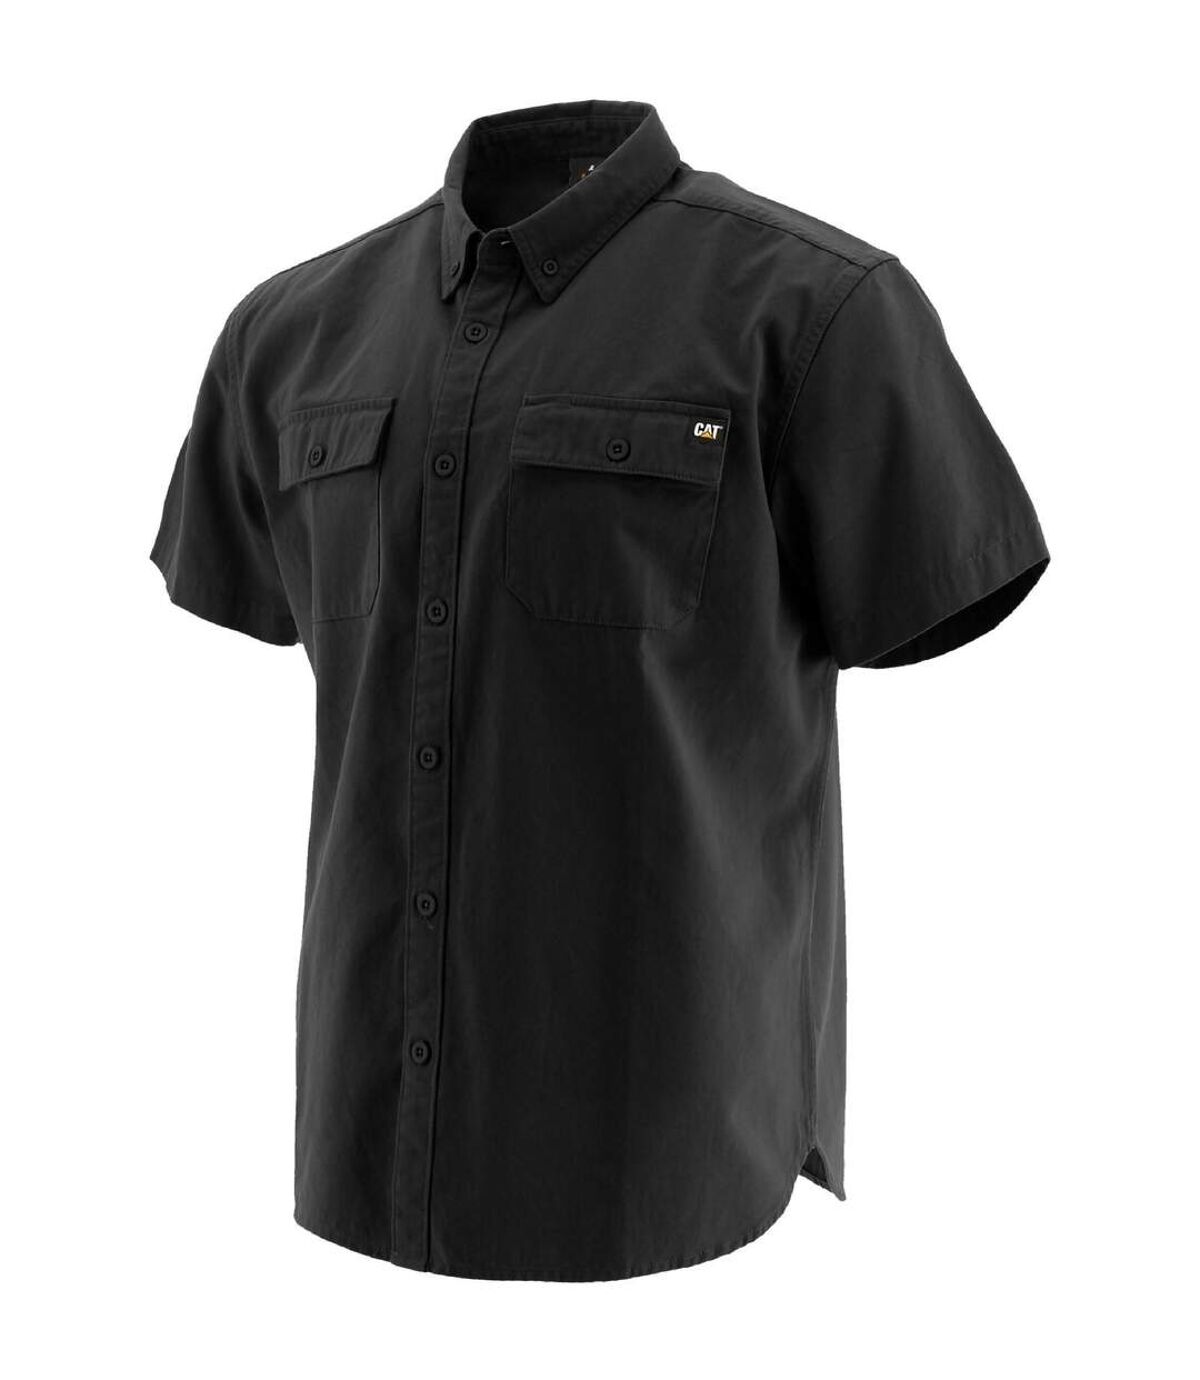 Caterpillar Mens Button Up Short Sleeve Work Shirt (Black) - UTFS6669